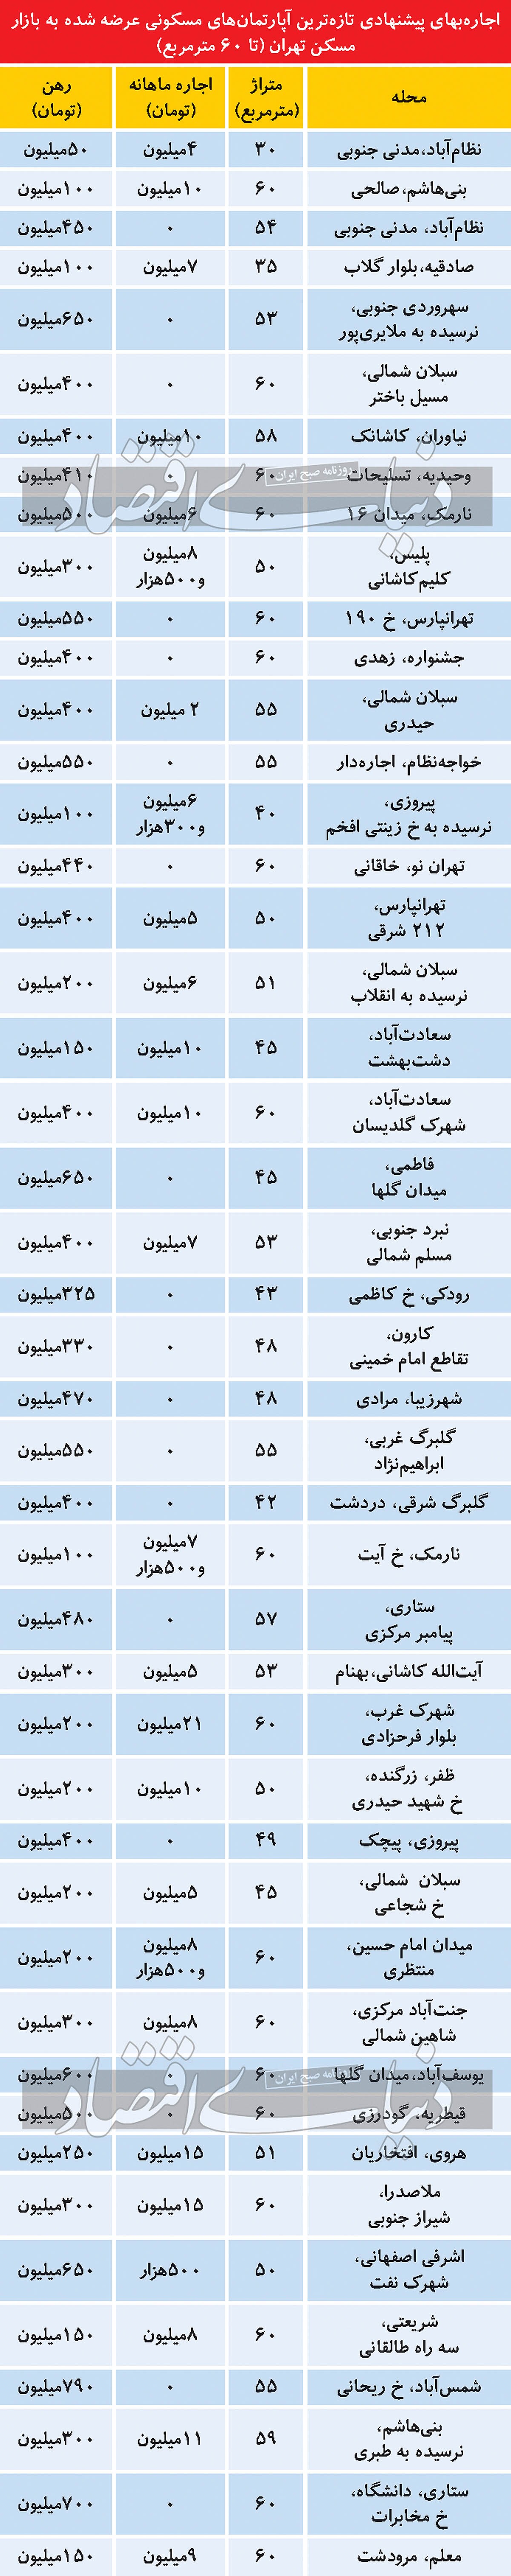 قیمت اجاره آپارتمان های نقلی در تهران/ جدول